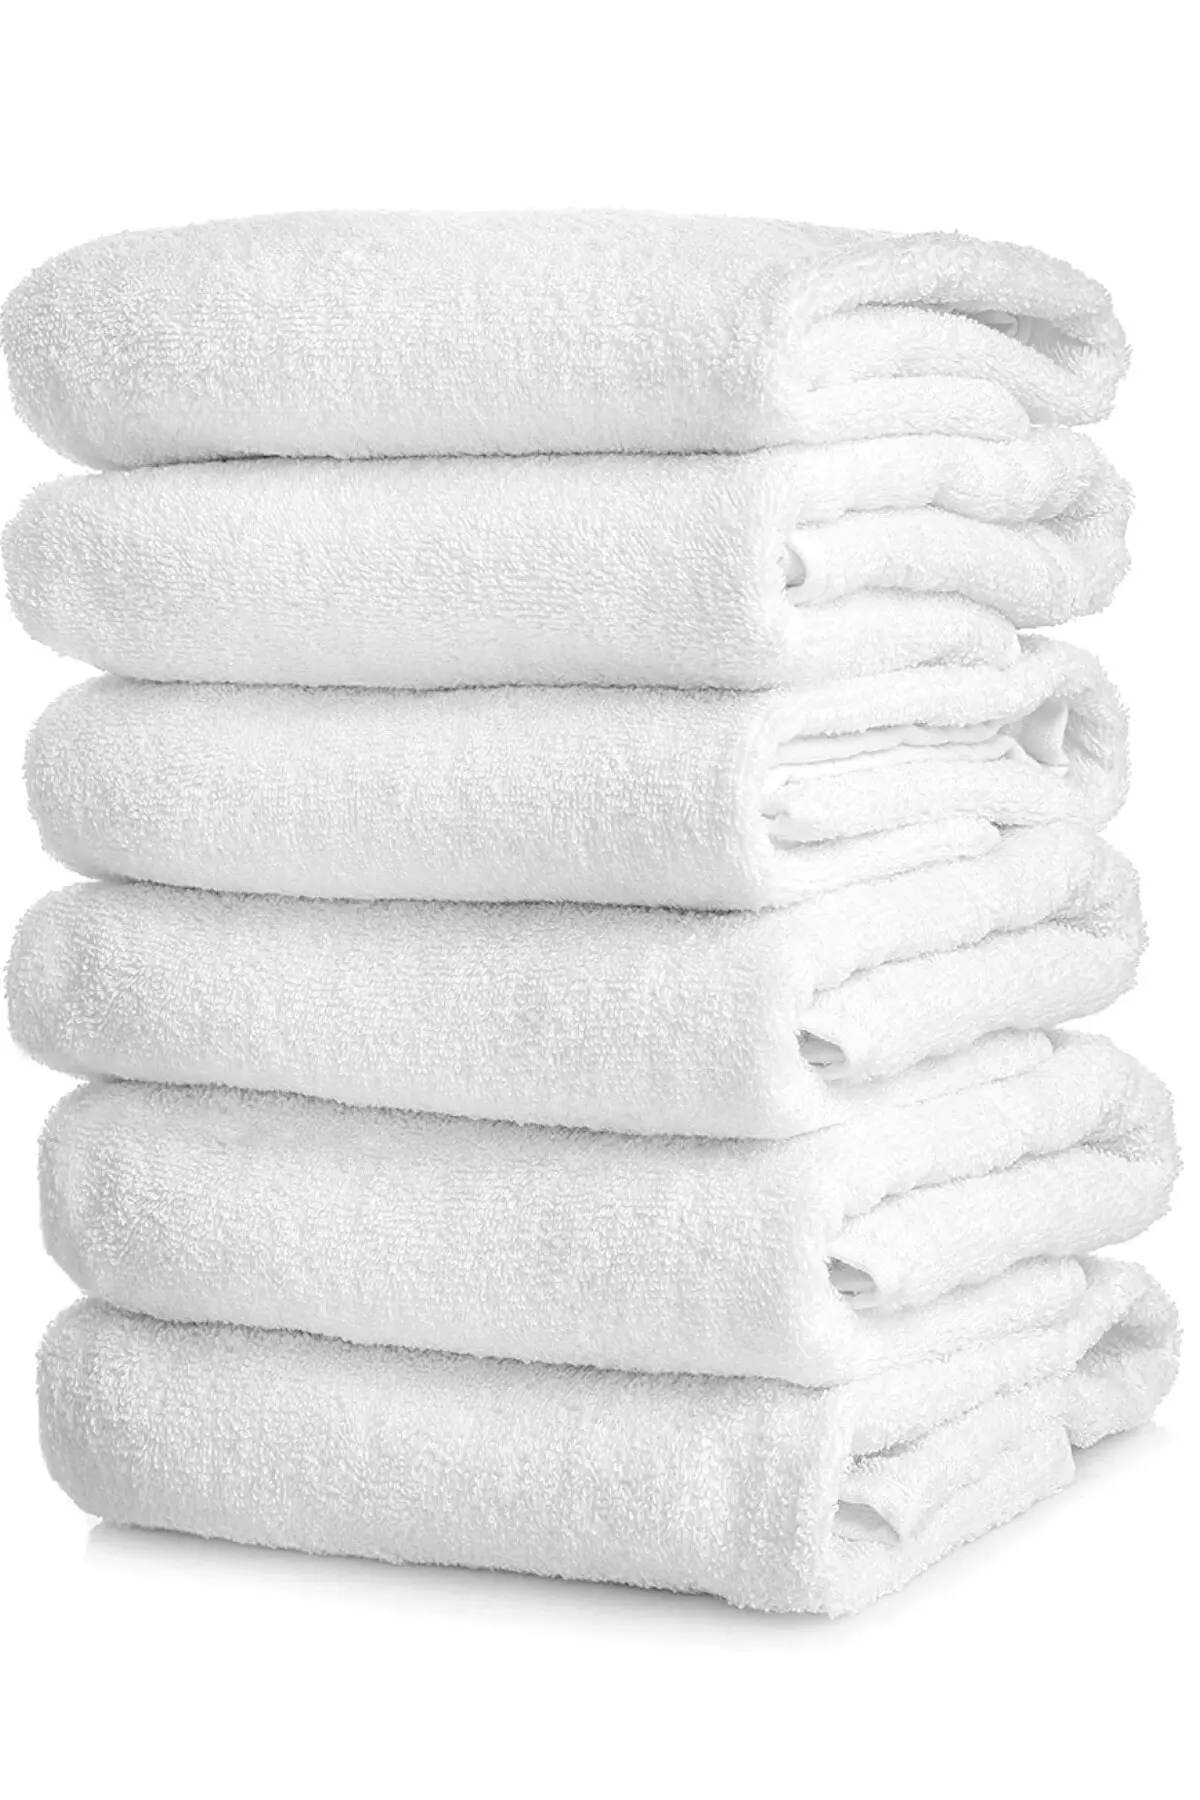 

Hotel Group Bath Towel 6 Pieces Cotton 70x140 Cm White Soft